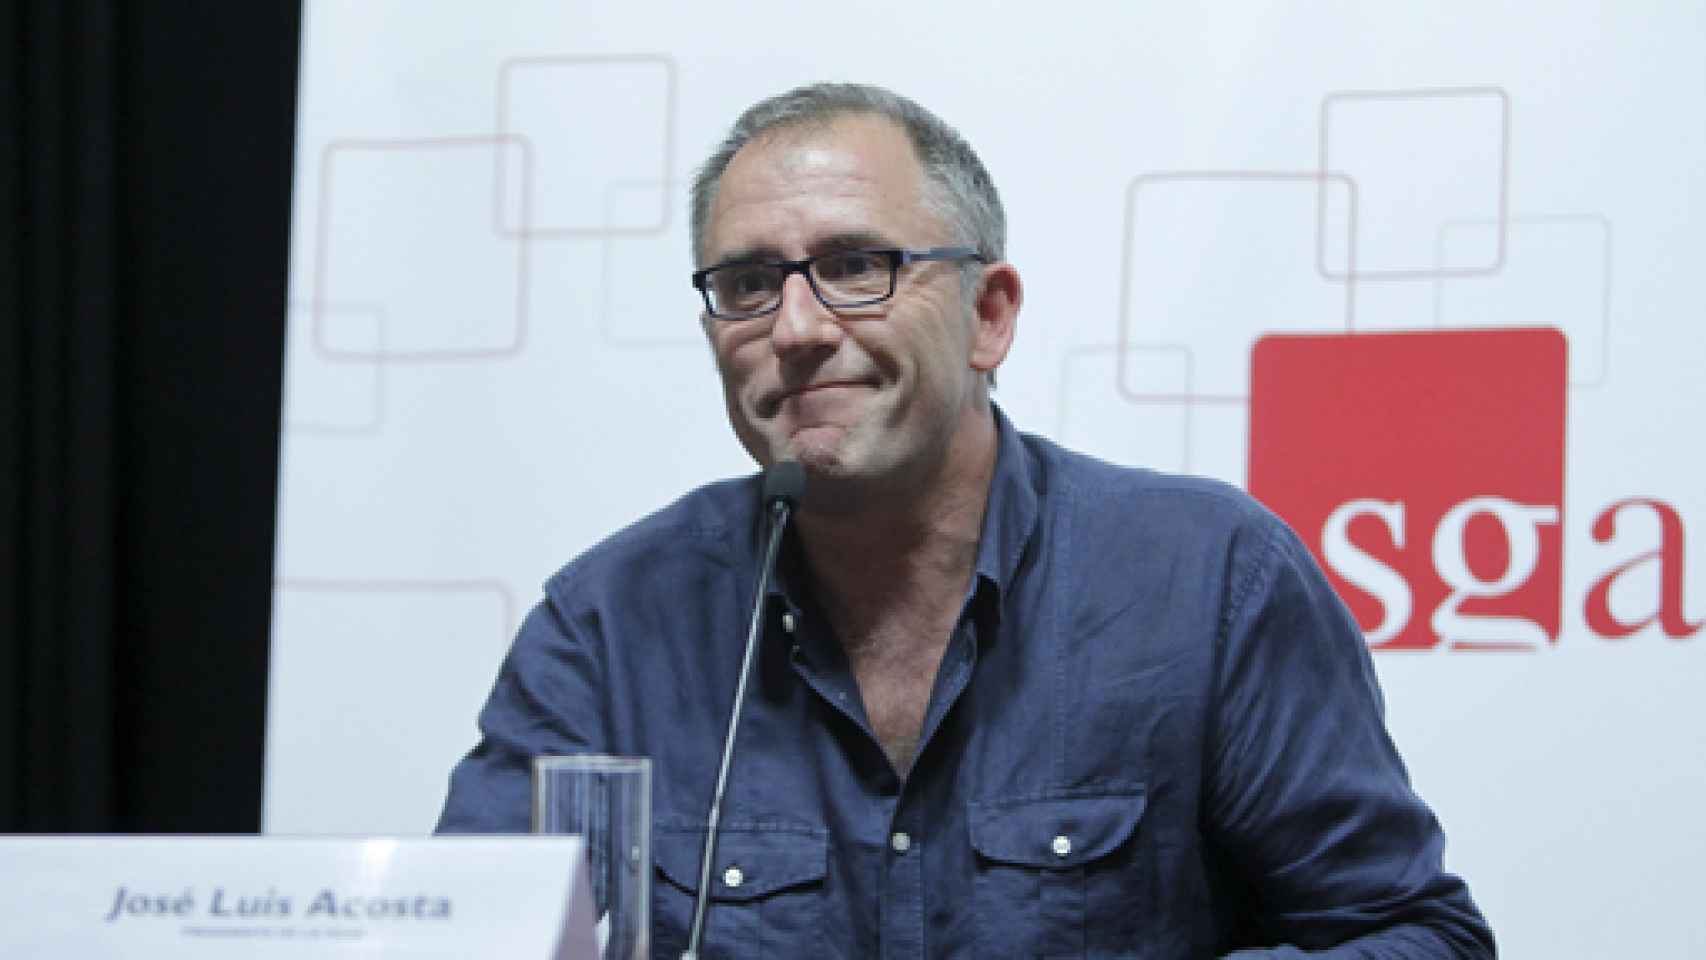 Image: José Luis Acosta, reelegido presidente de la SGAE